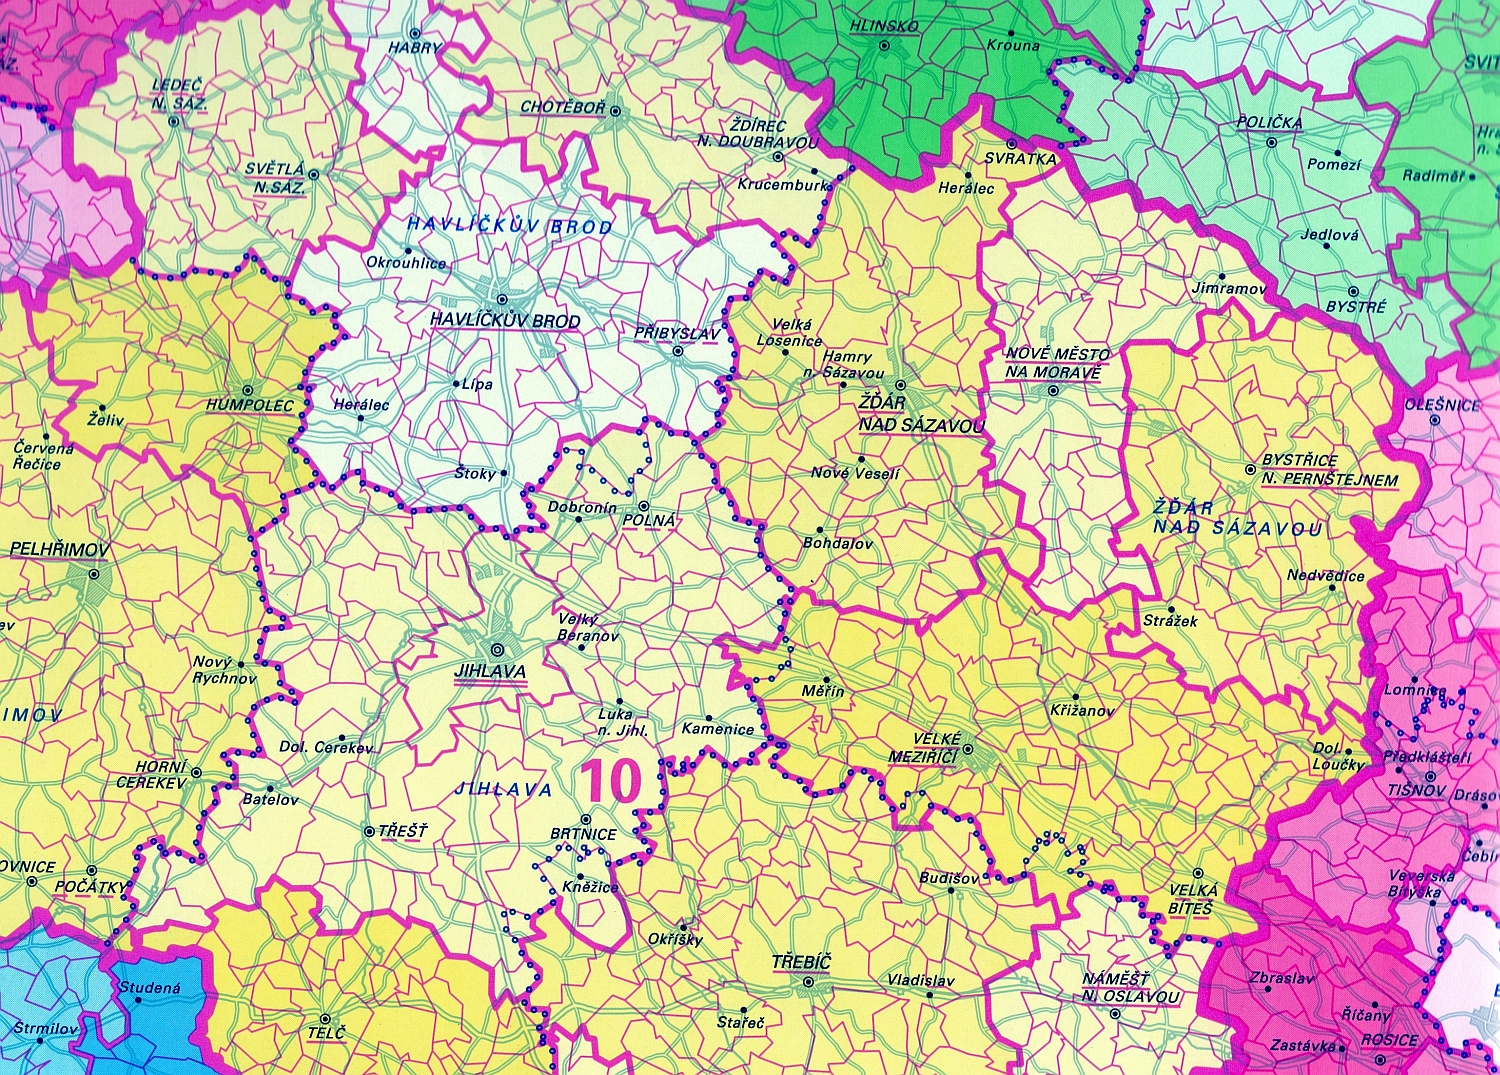 Mapa správního rozdělení ČR 1 : 1 000 000